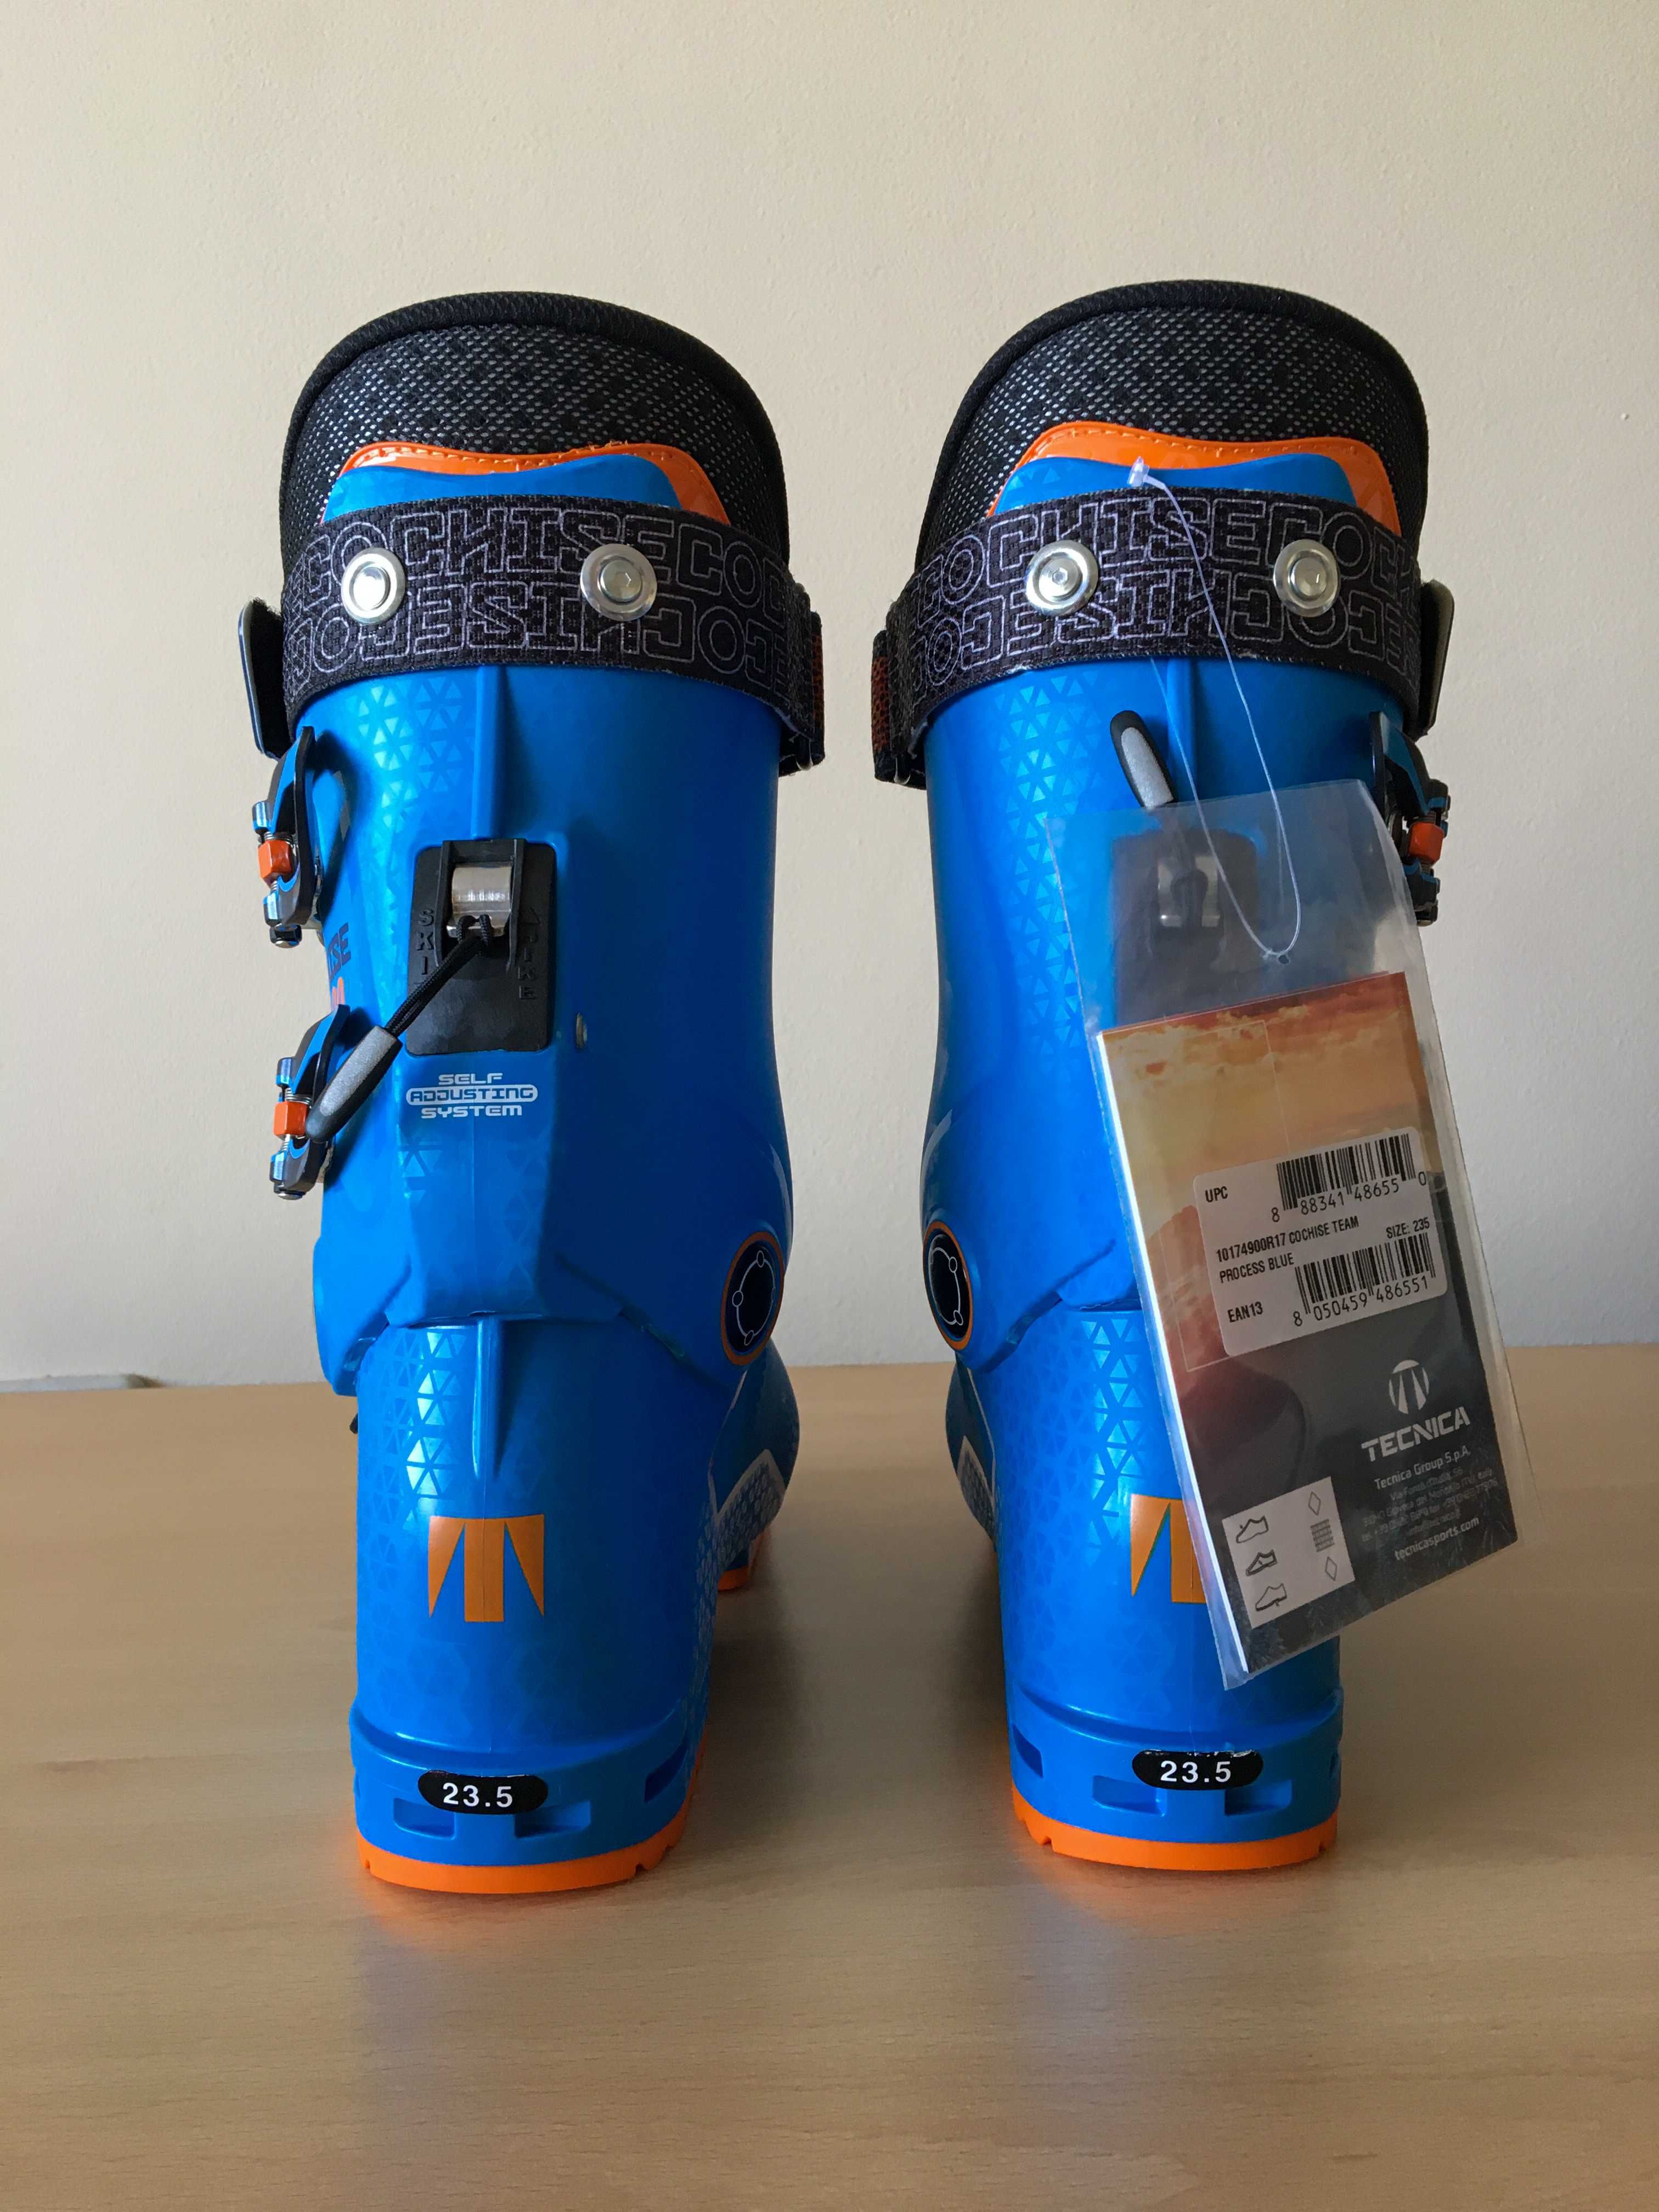 Обувки Tecnica за ски туризъм /туринг/ и ски, размер MP 235 -23.5